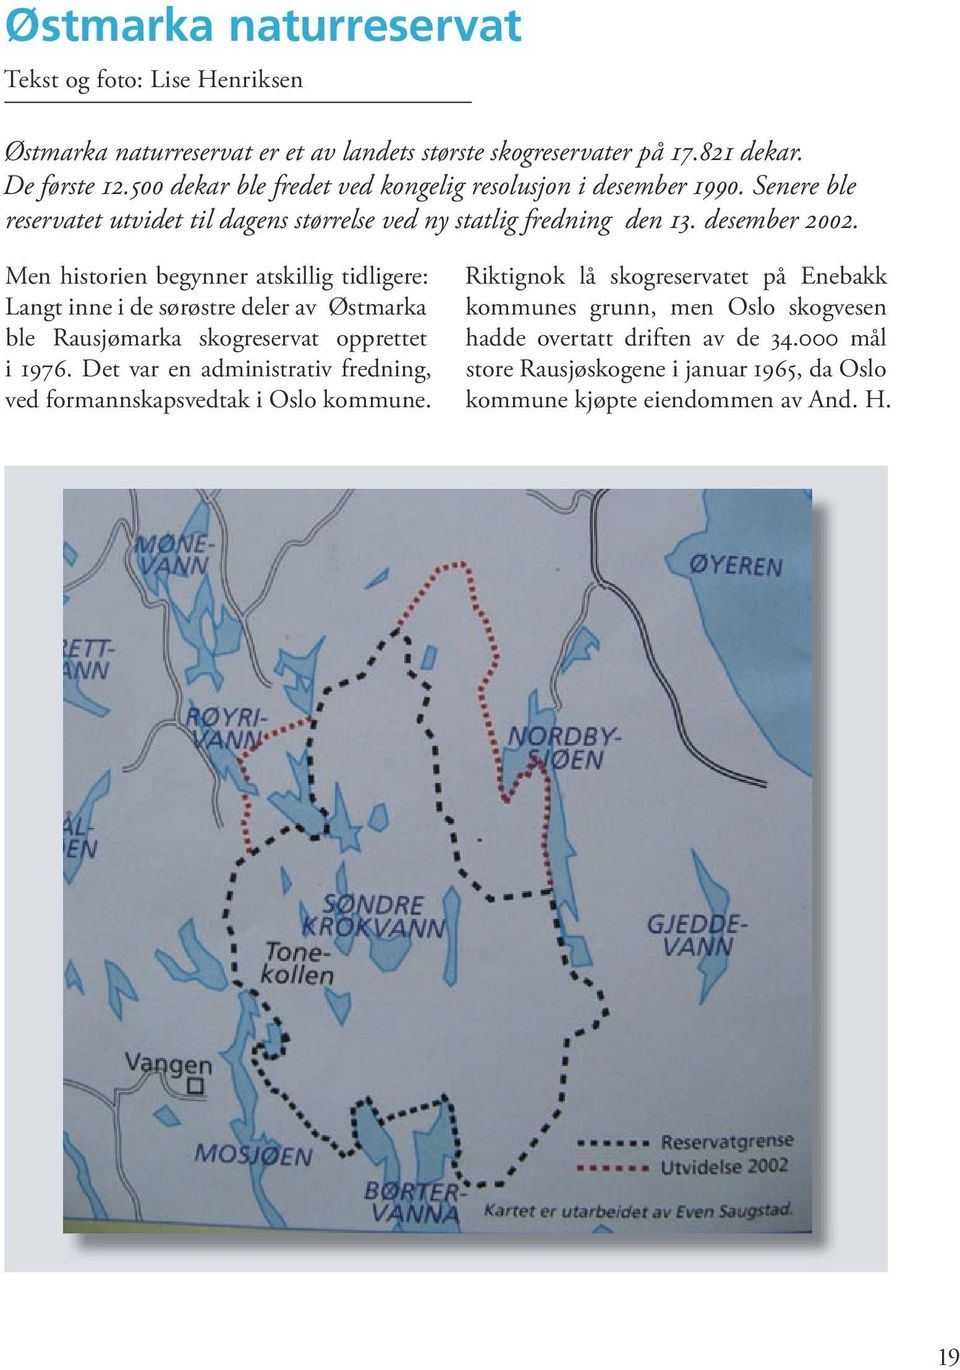 Men historien begynner atskillig tidligere: Langt inne i de sørøstre deler av Østmarka ble Rausjømarka skogreservat opprettet i 1976.